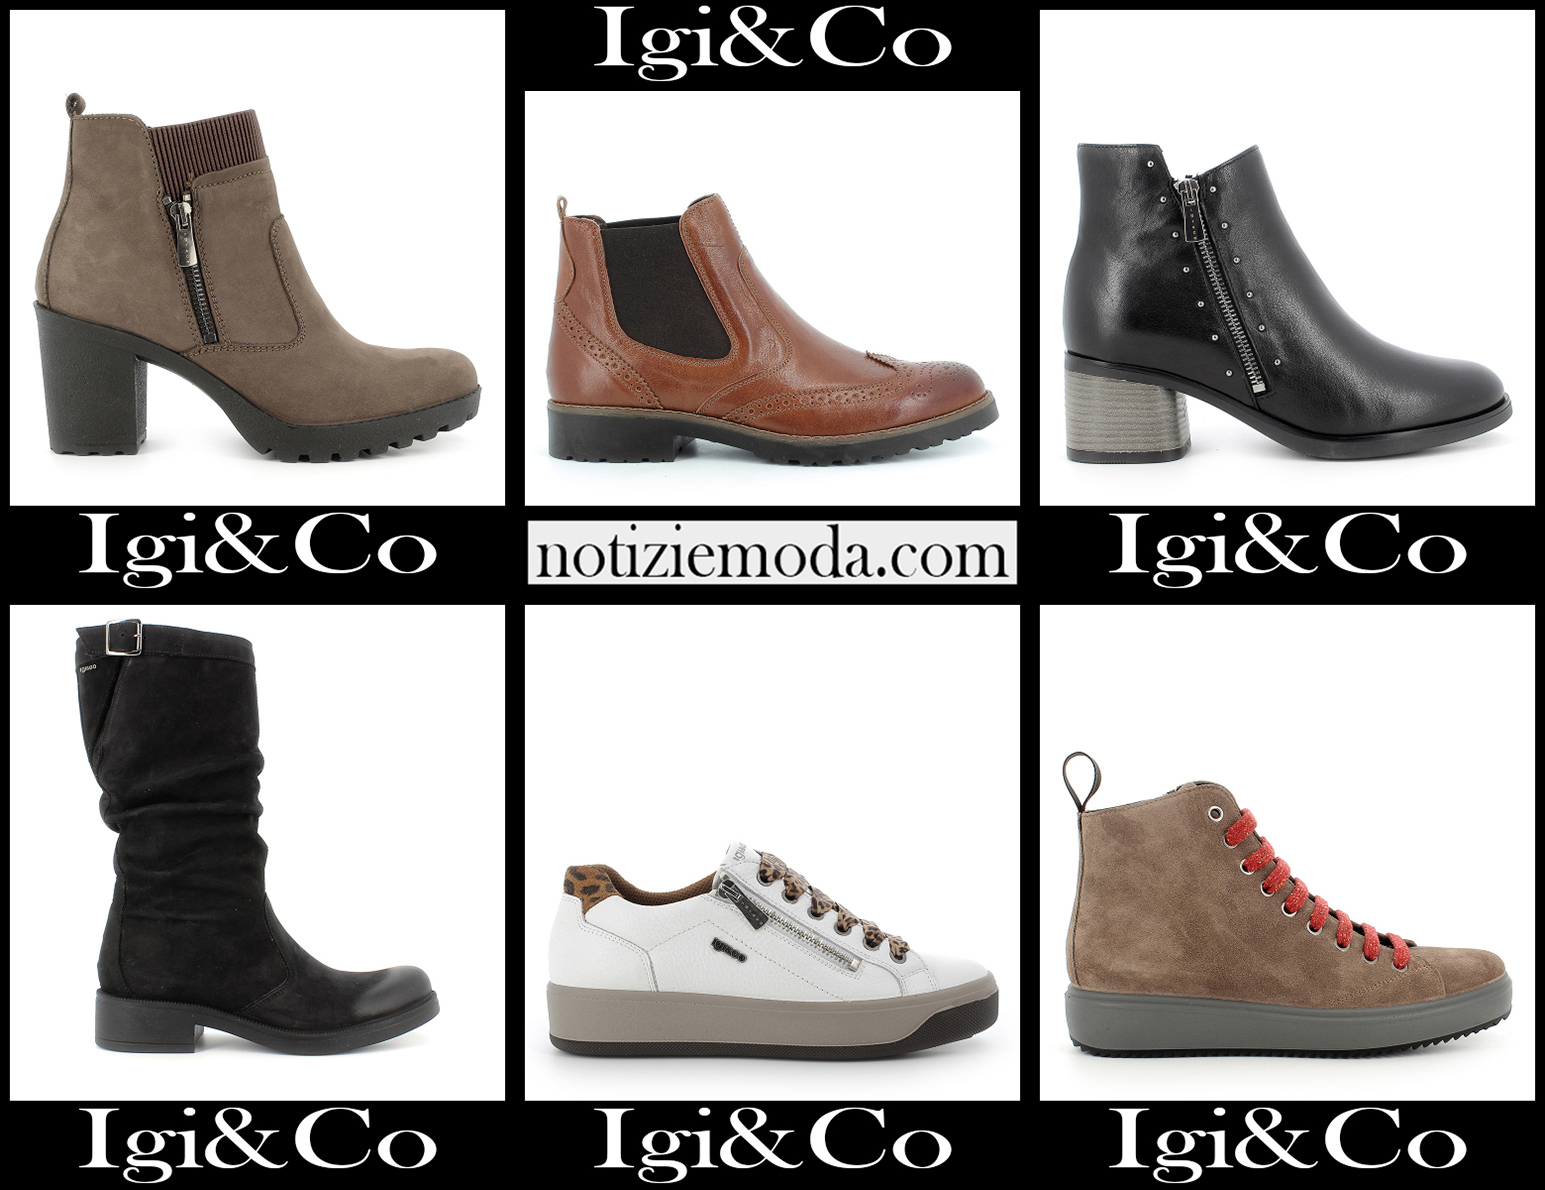 Nuovi arrivi scarpe IgiCo 2021 calzature moda donna